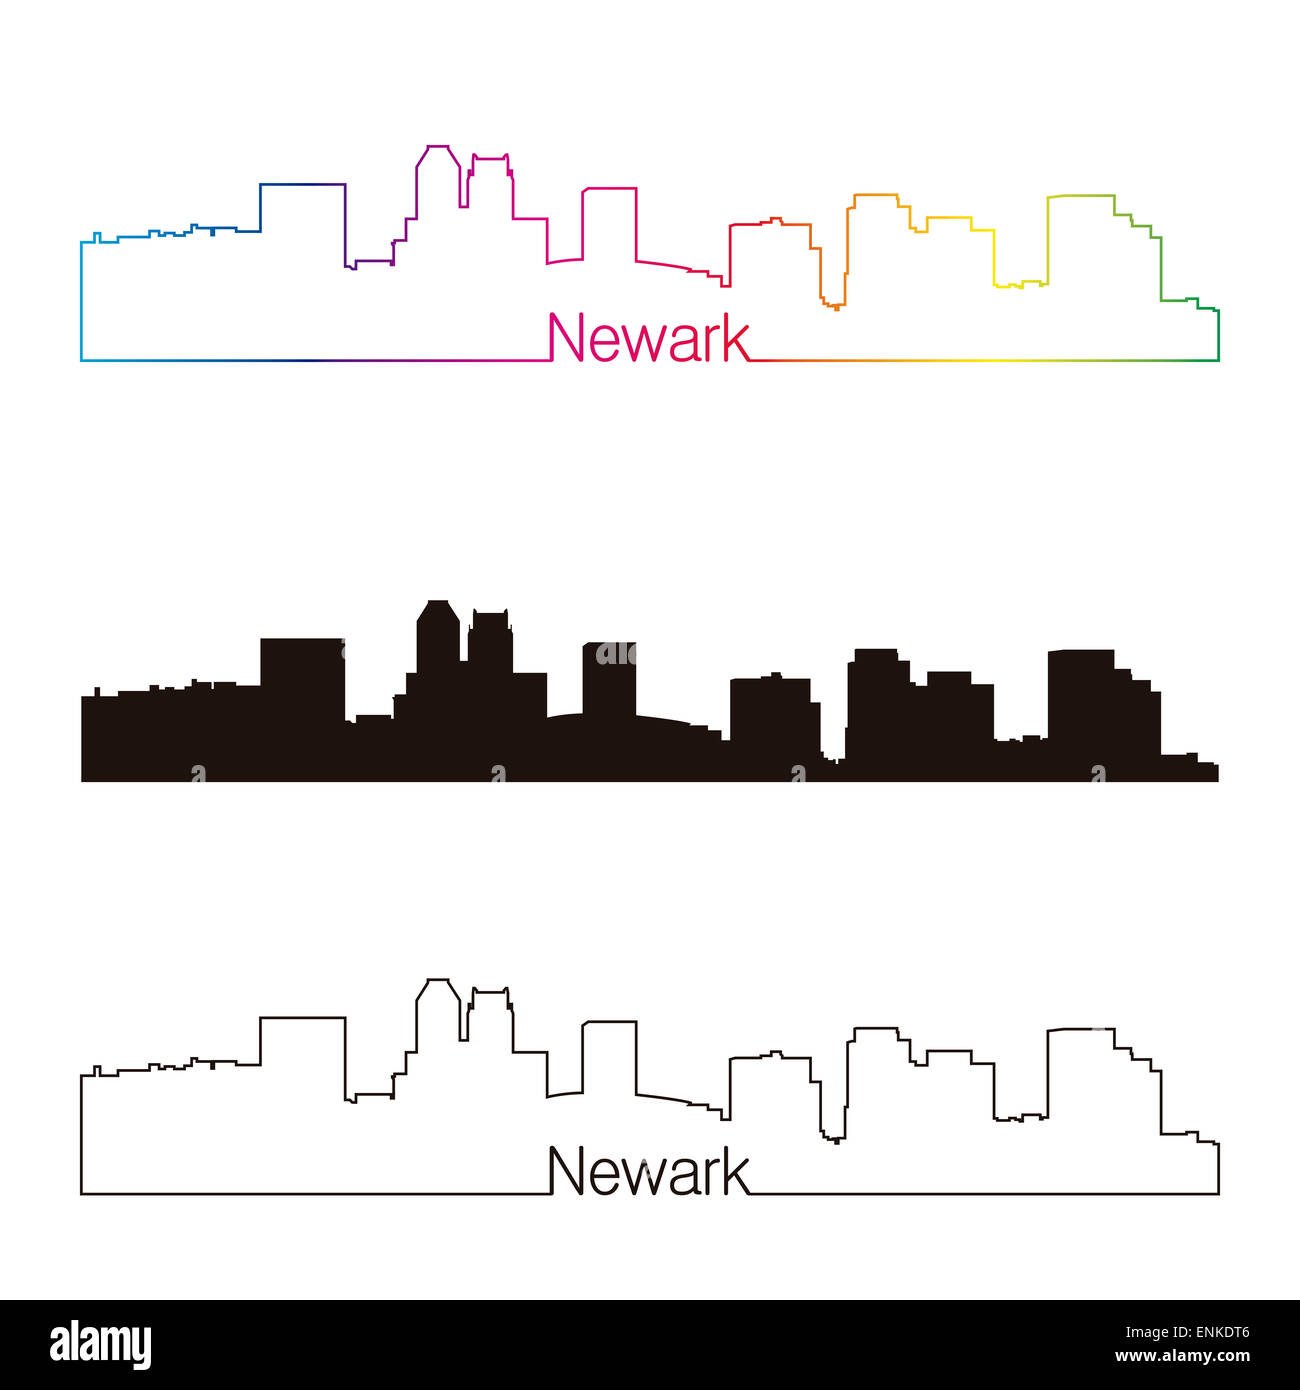 Newark skyline style linéaire avec rainbow Banque D'Images